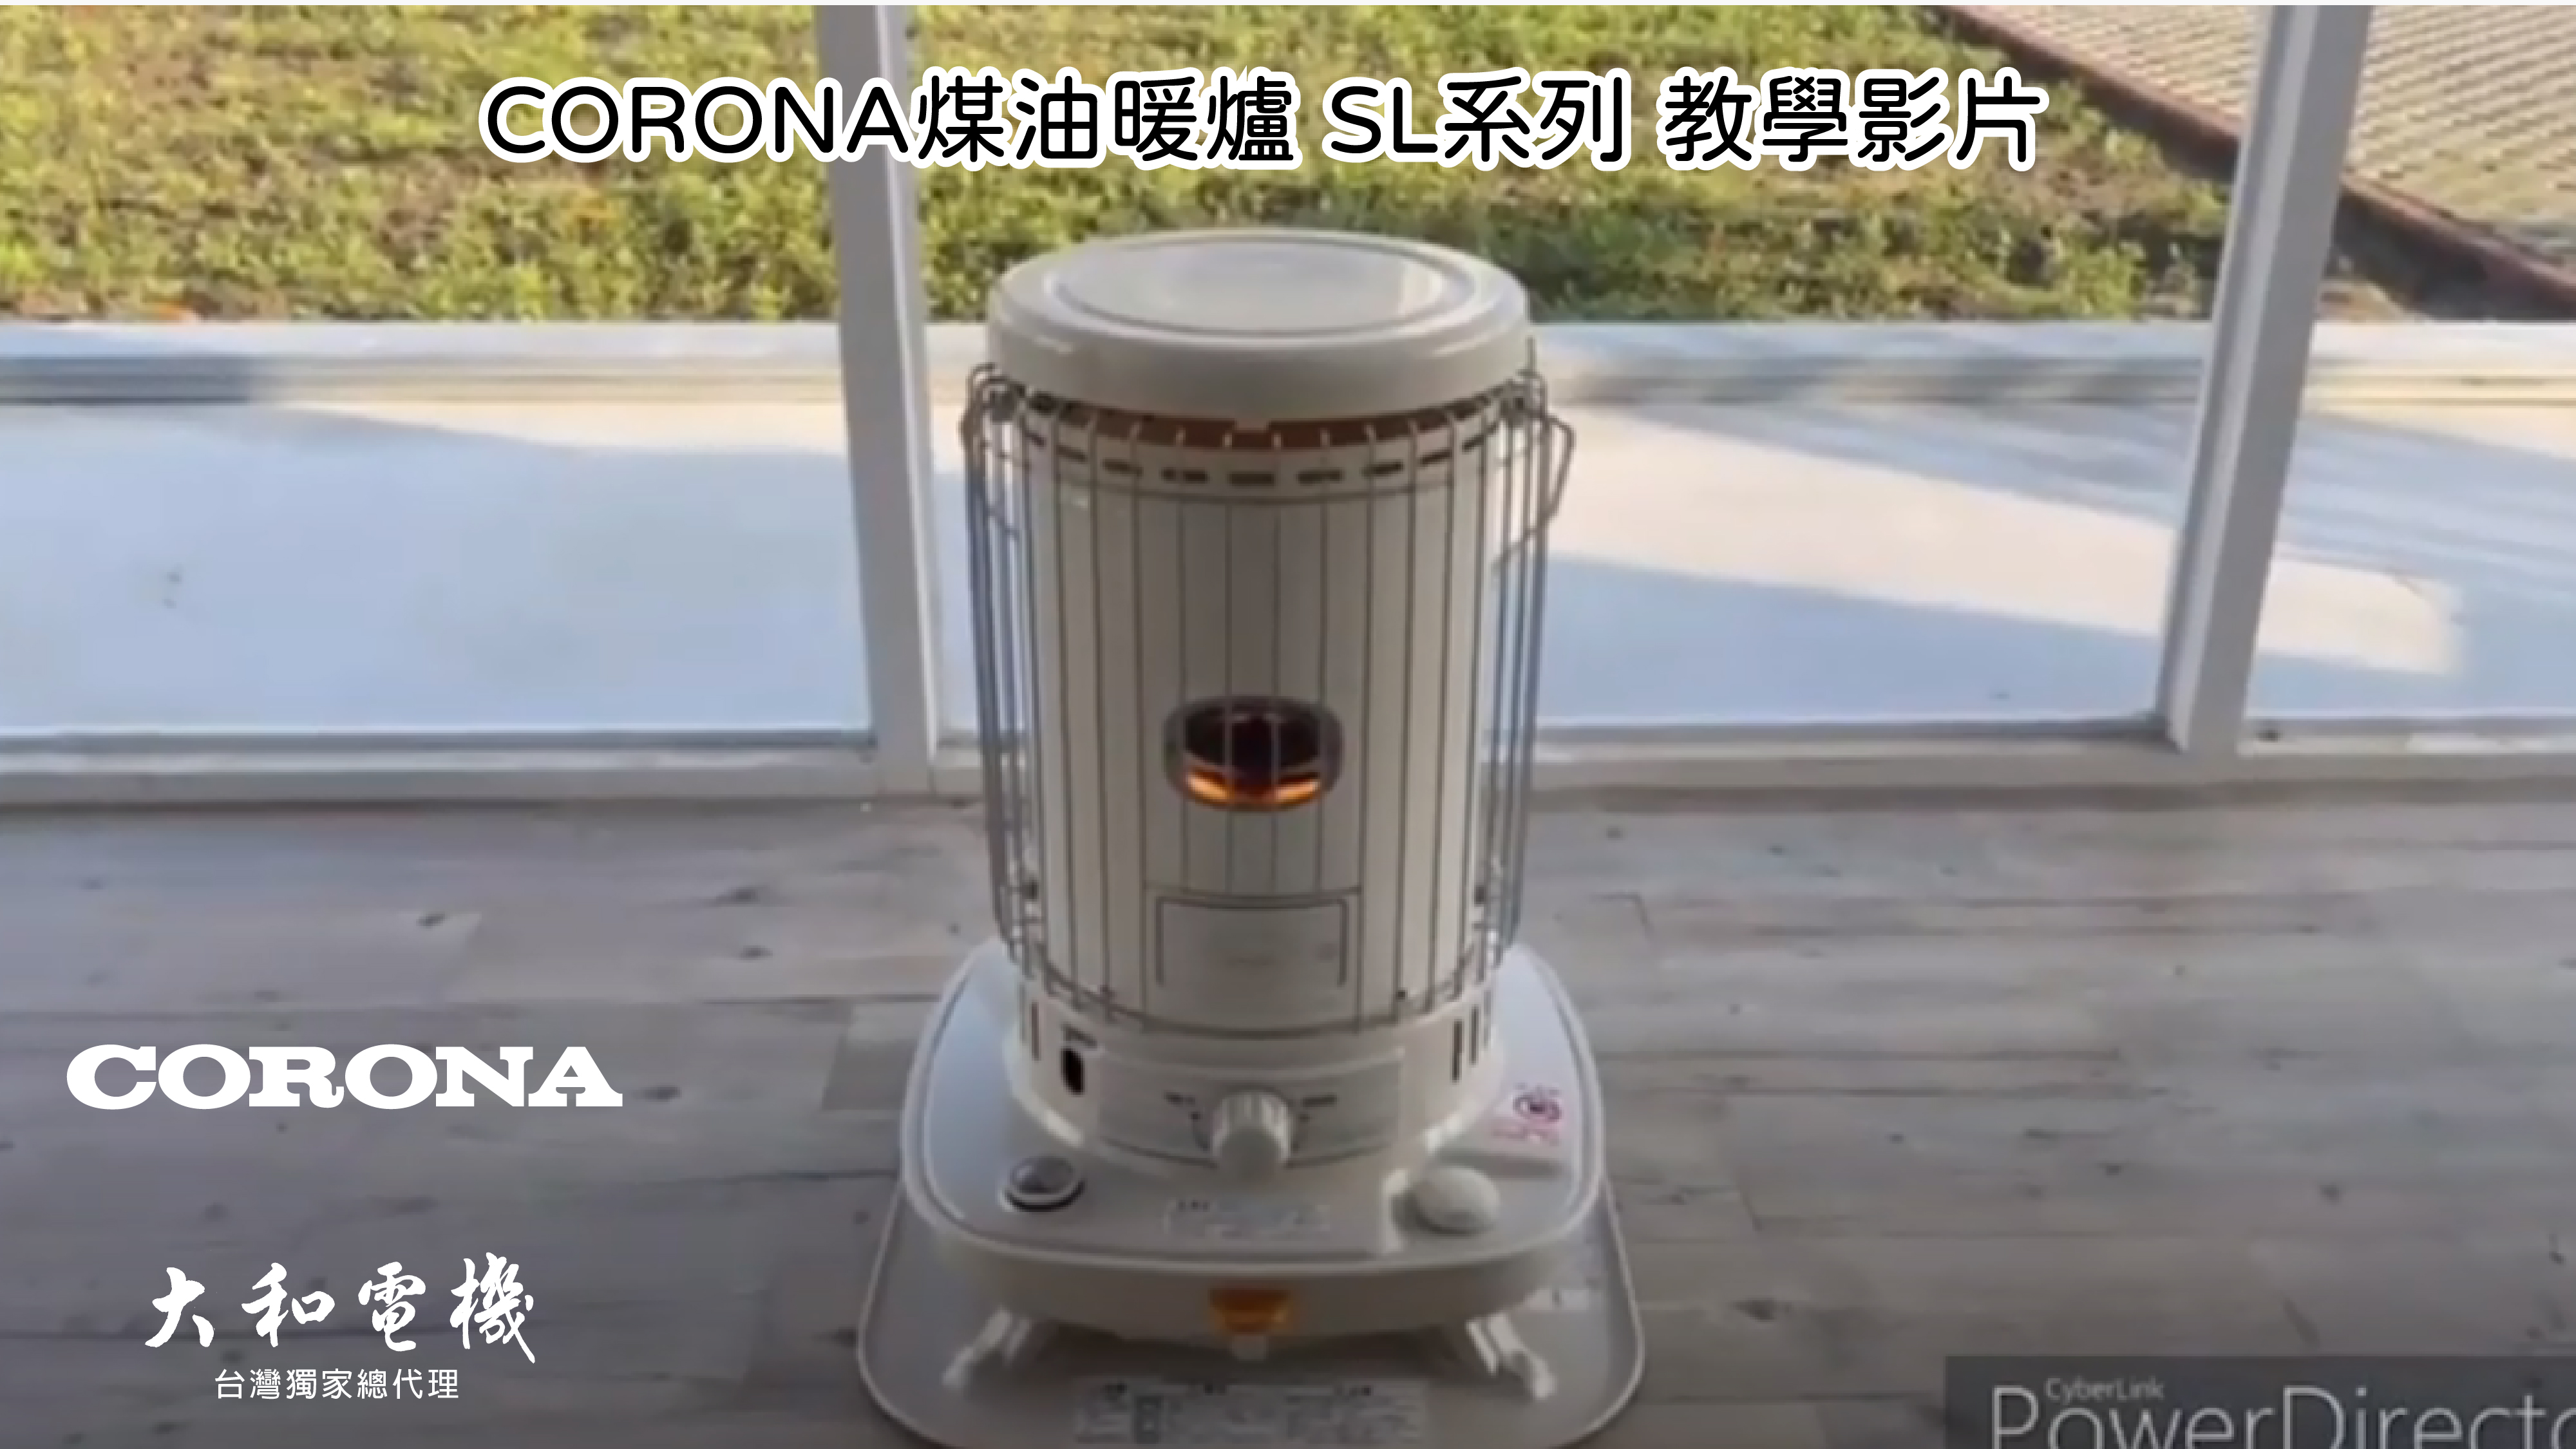 特惠【14-17坪】SL-6622 CORONA台灣總代理| 傳統式煤油暖爐| 所有商品 